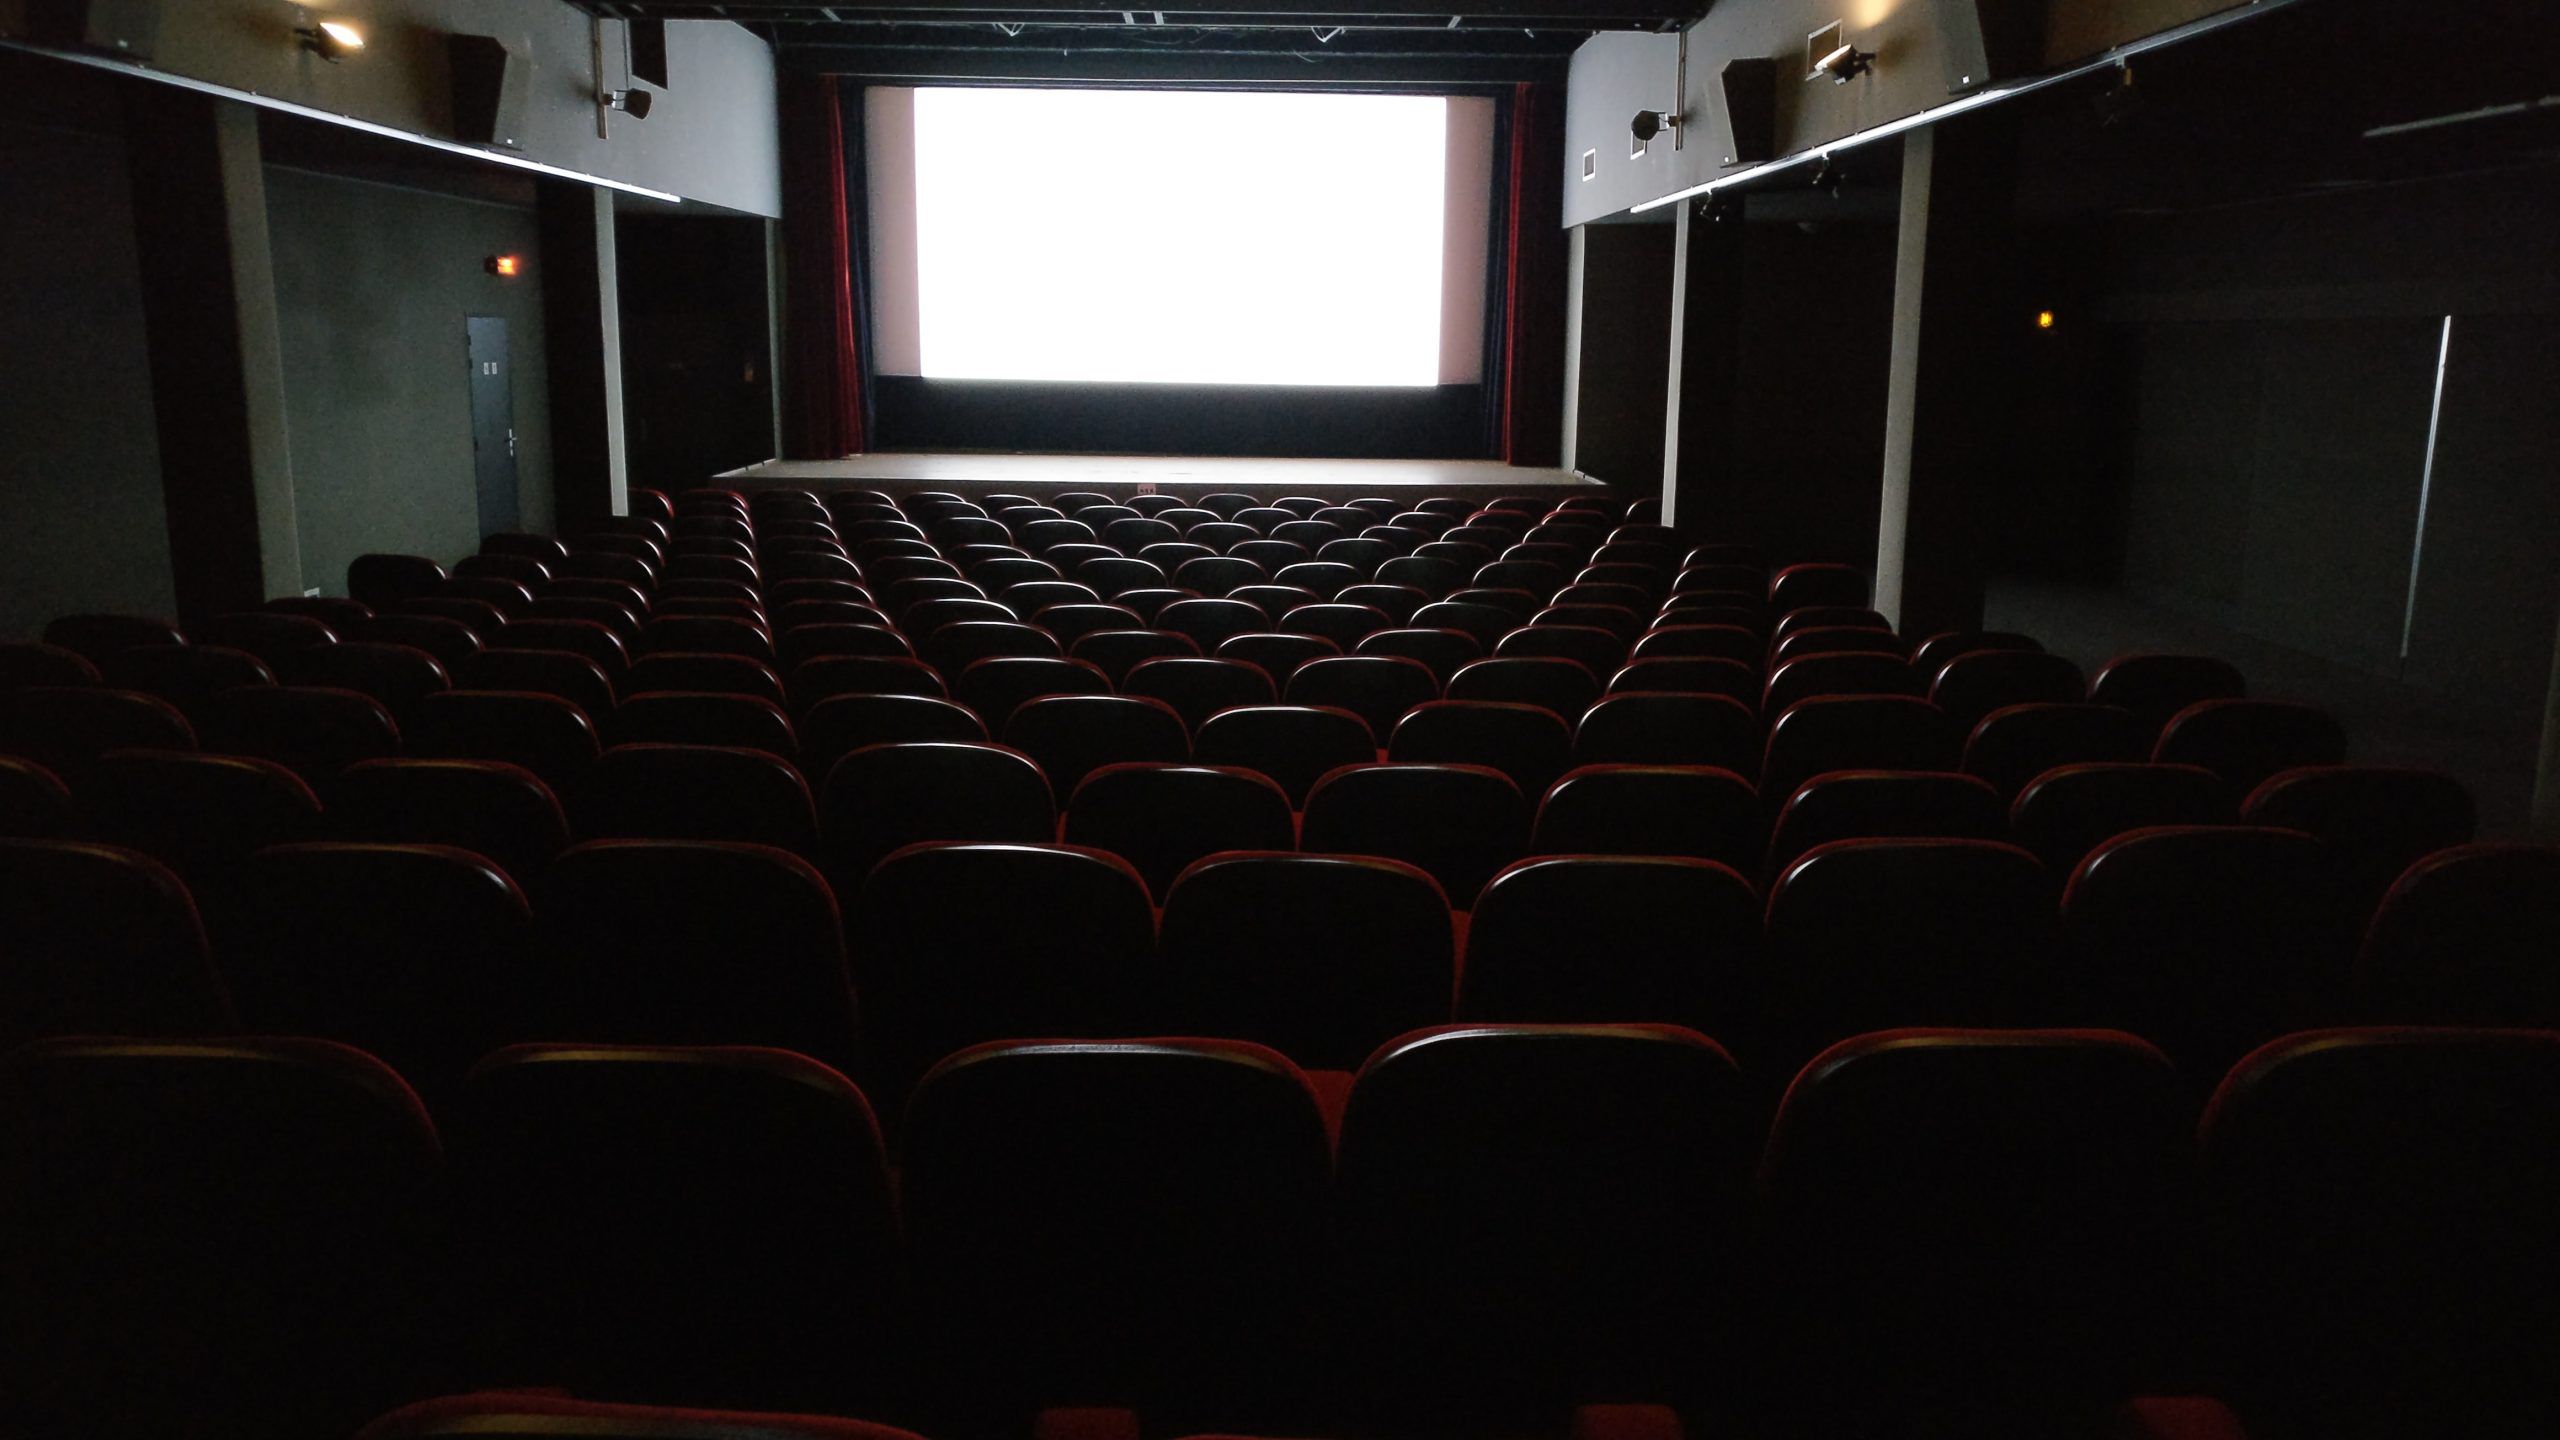 Agora podes reservar uma sala dos cinemas NOS e ver um filme à escolha